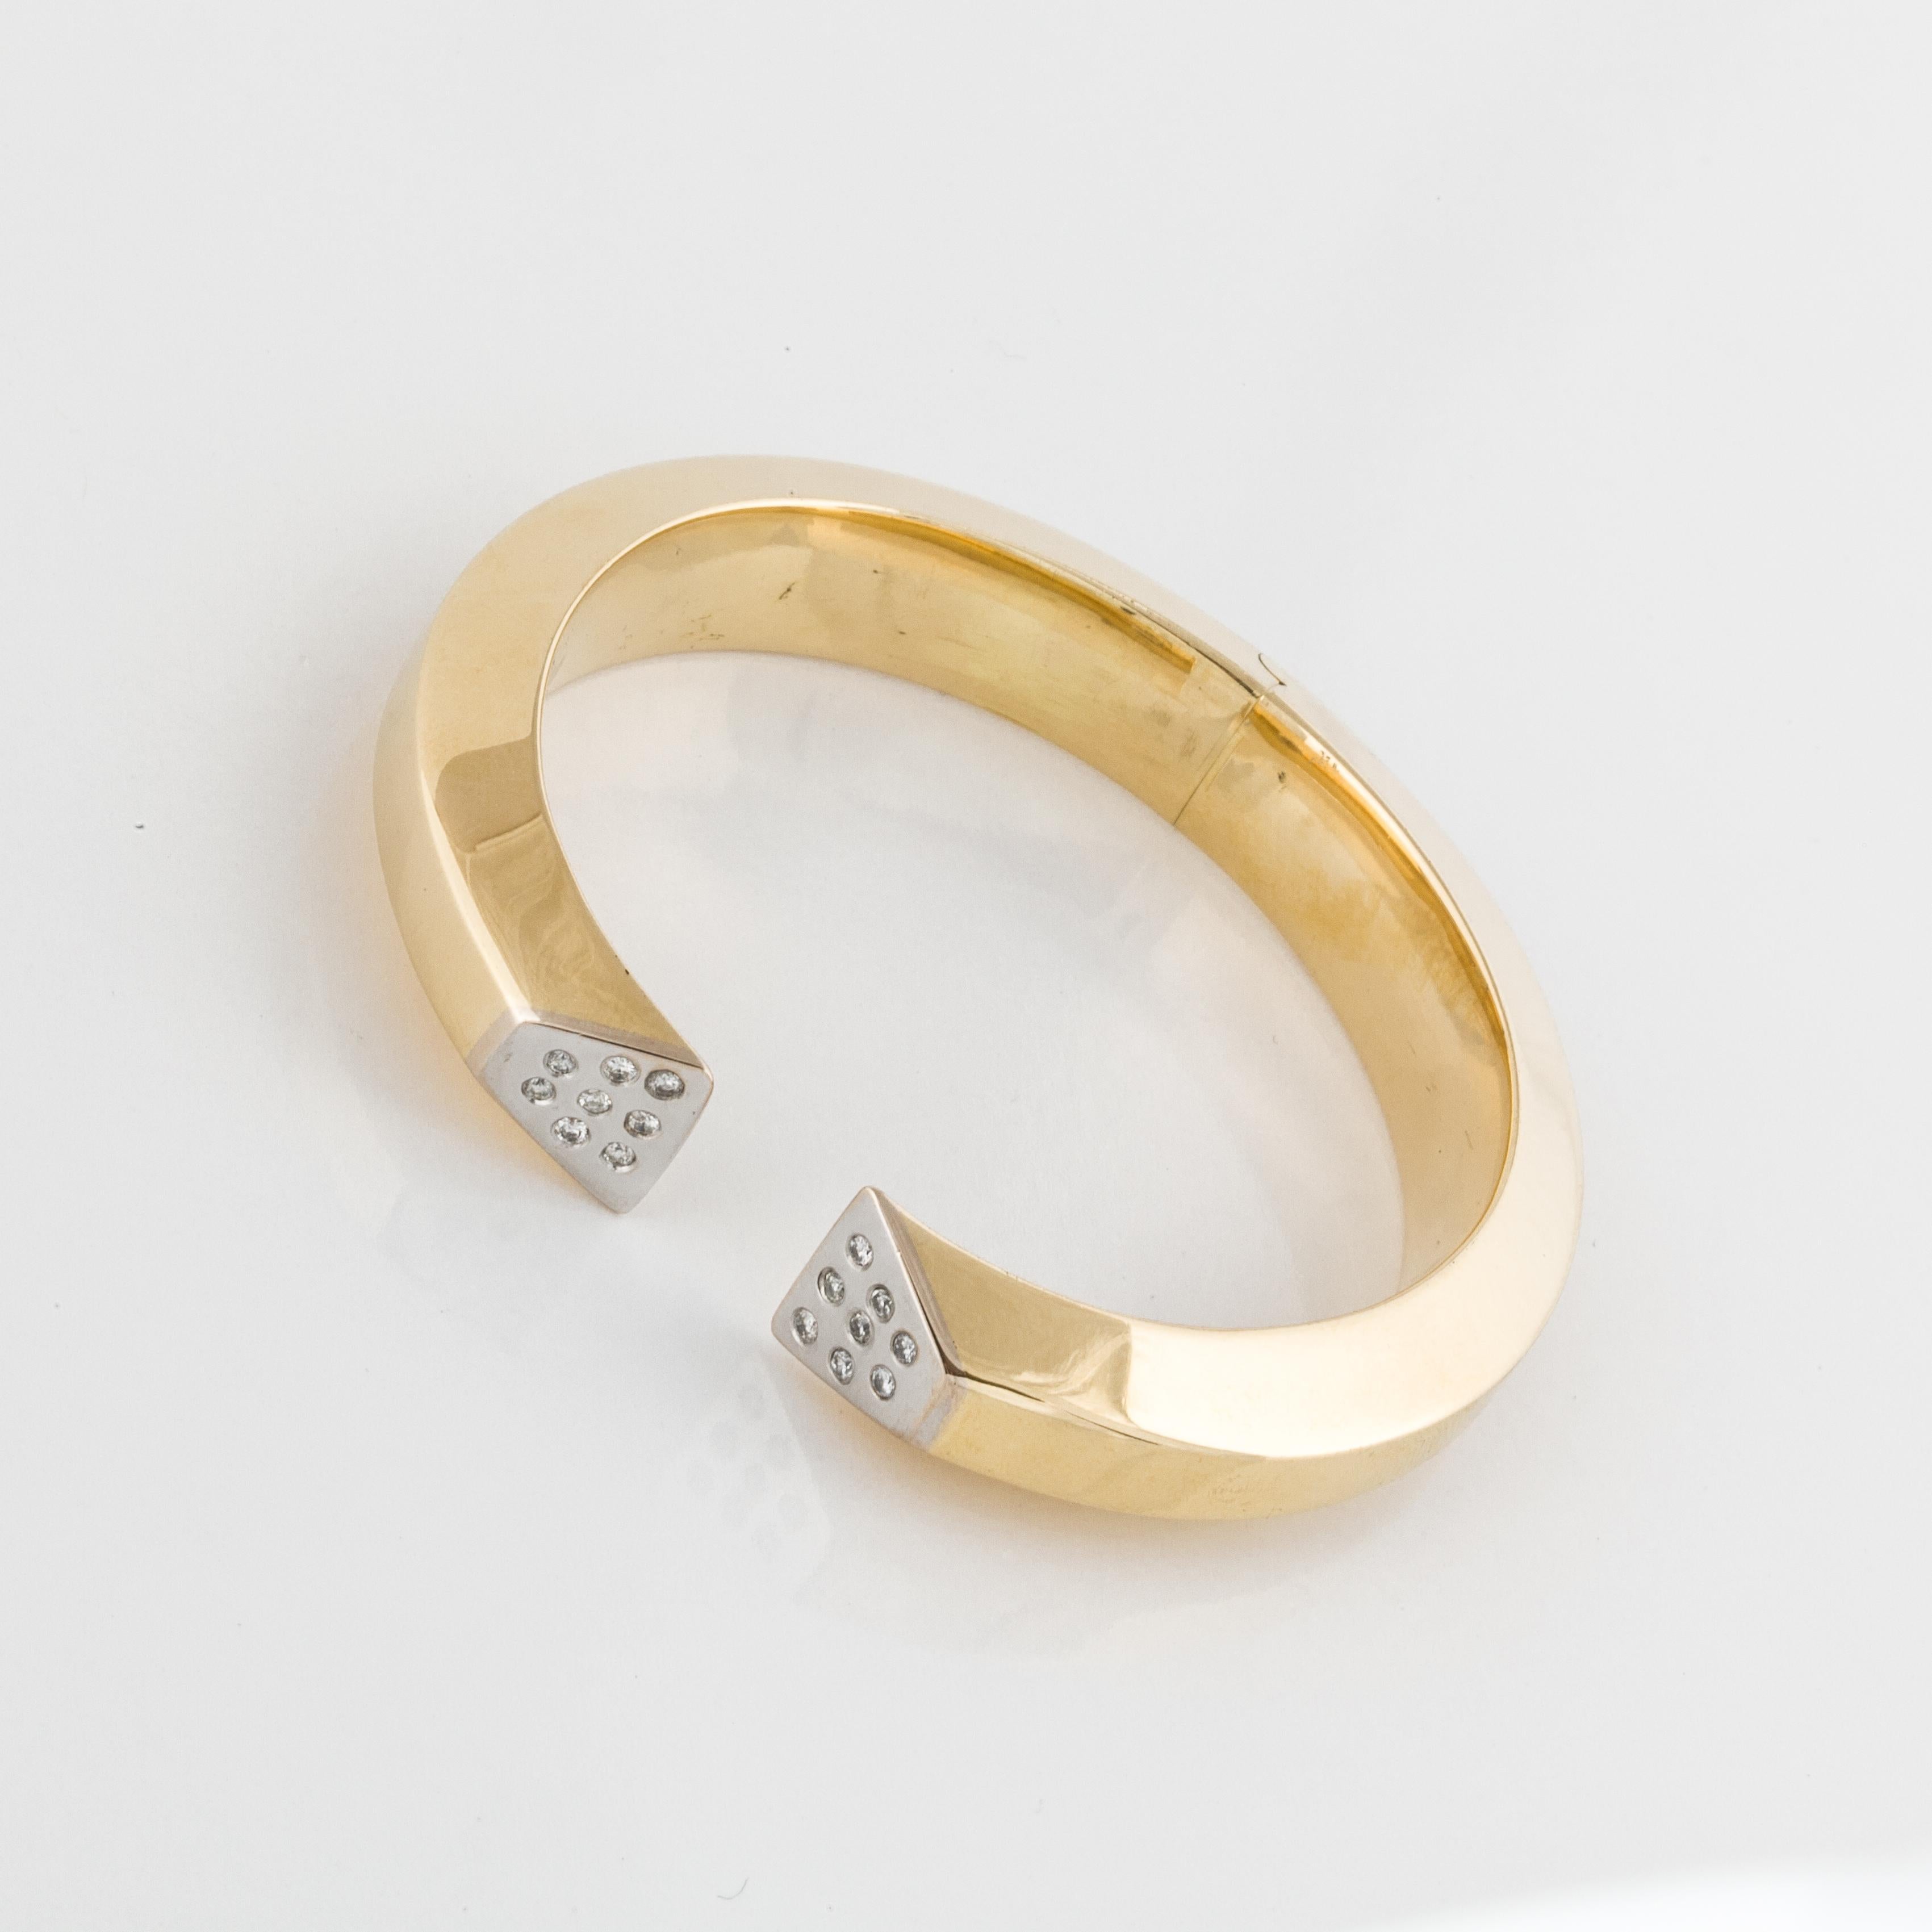 Bracelet moderne à charnière en or jaune 18 carats avec diamants ronds sertis en or blanc 18 carats.  Il y a seize diamants ronds totalisant 0,35 carats ; couleur G-H et clarté SI1-I1.  Le sommet fait 7/16 pouces de large et le diamètre intérieur